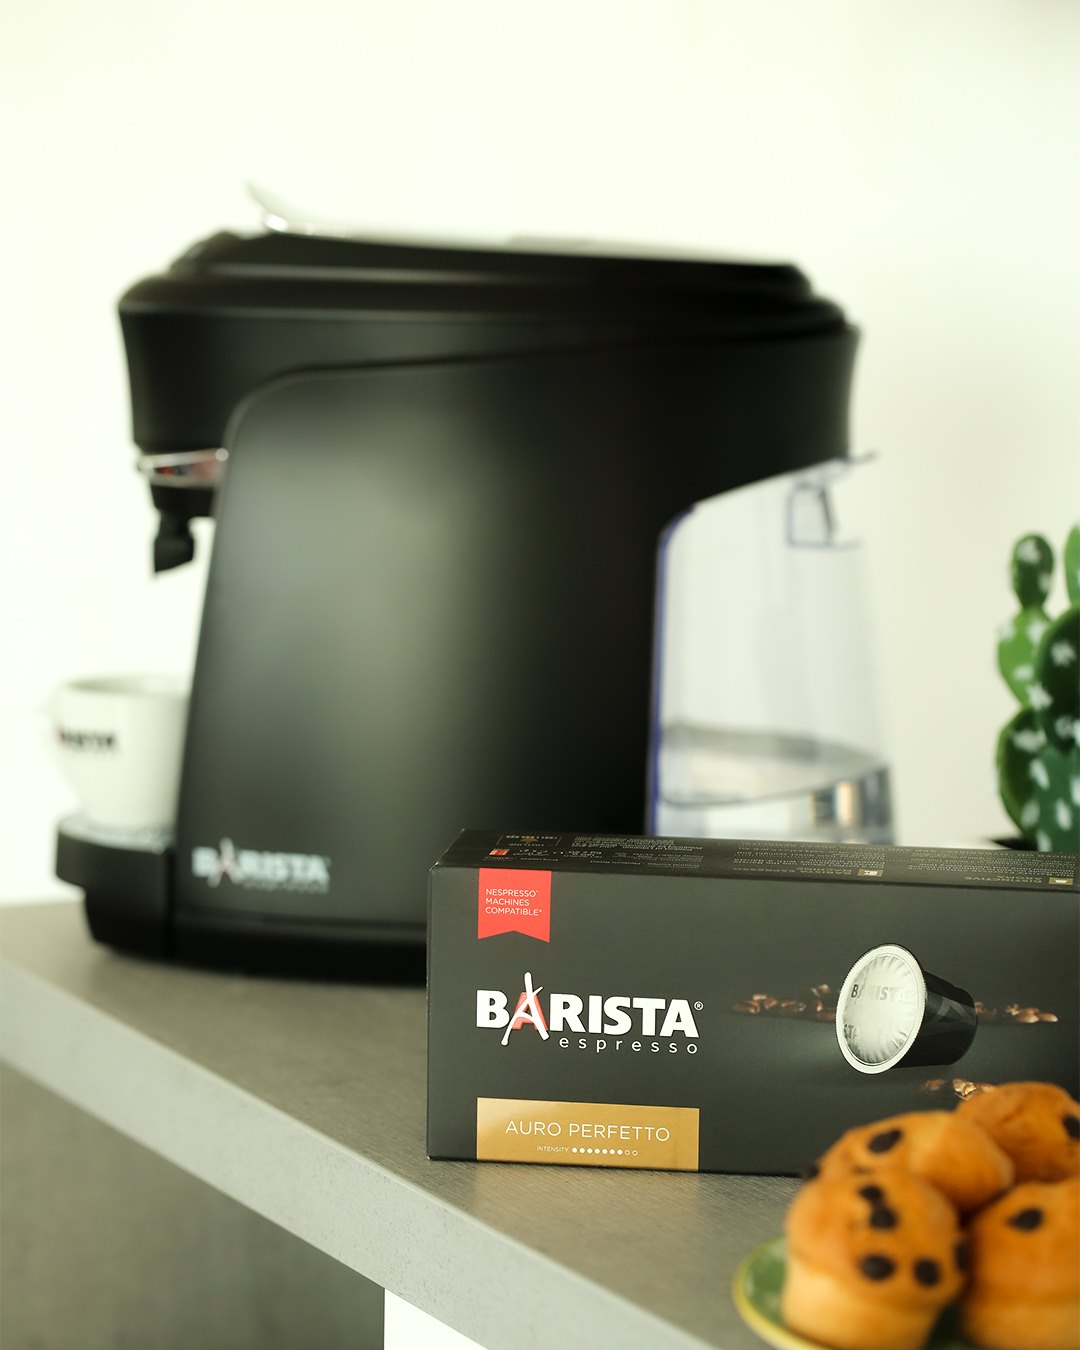 Barista Espresso Coffee Capsules | Auro Perfetto | 20 Capsules | 165g Boxes